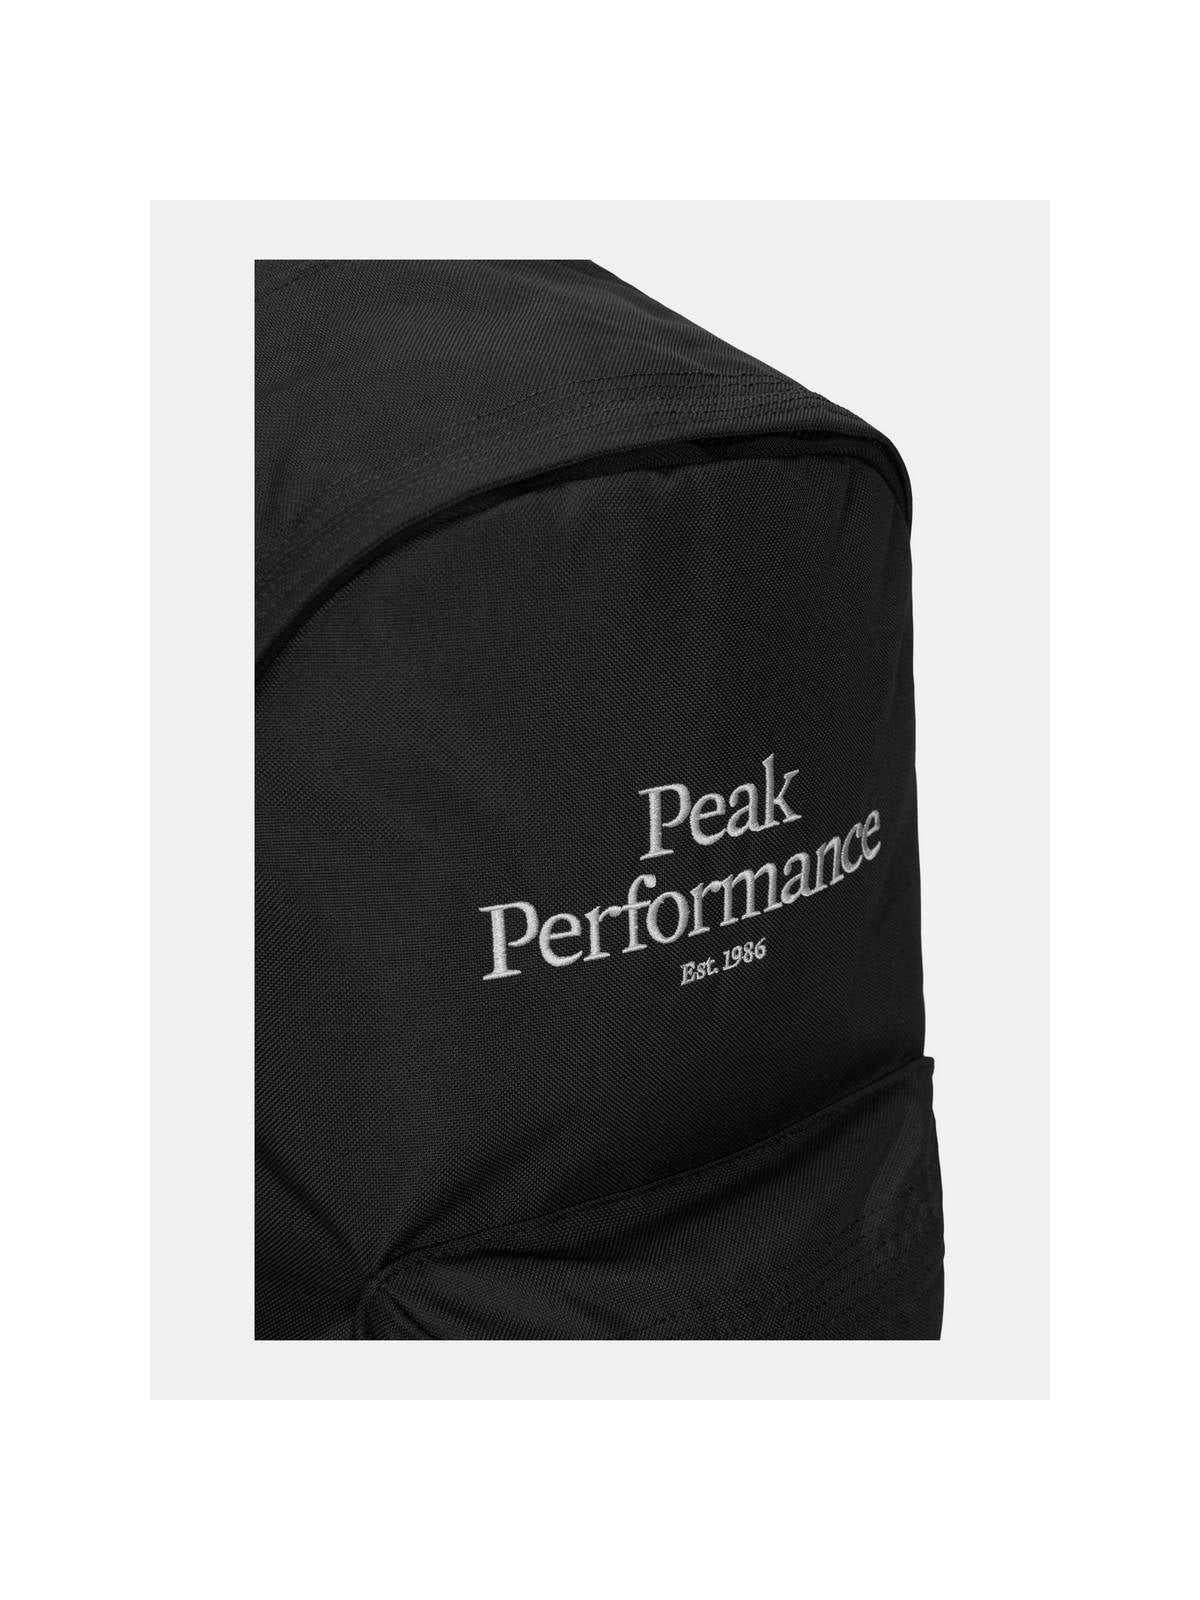 Plecak Peak Performance OG BACKPACK